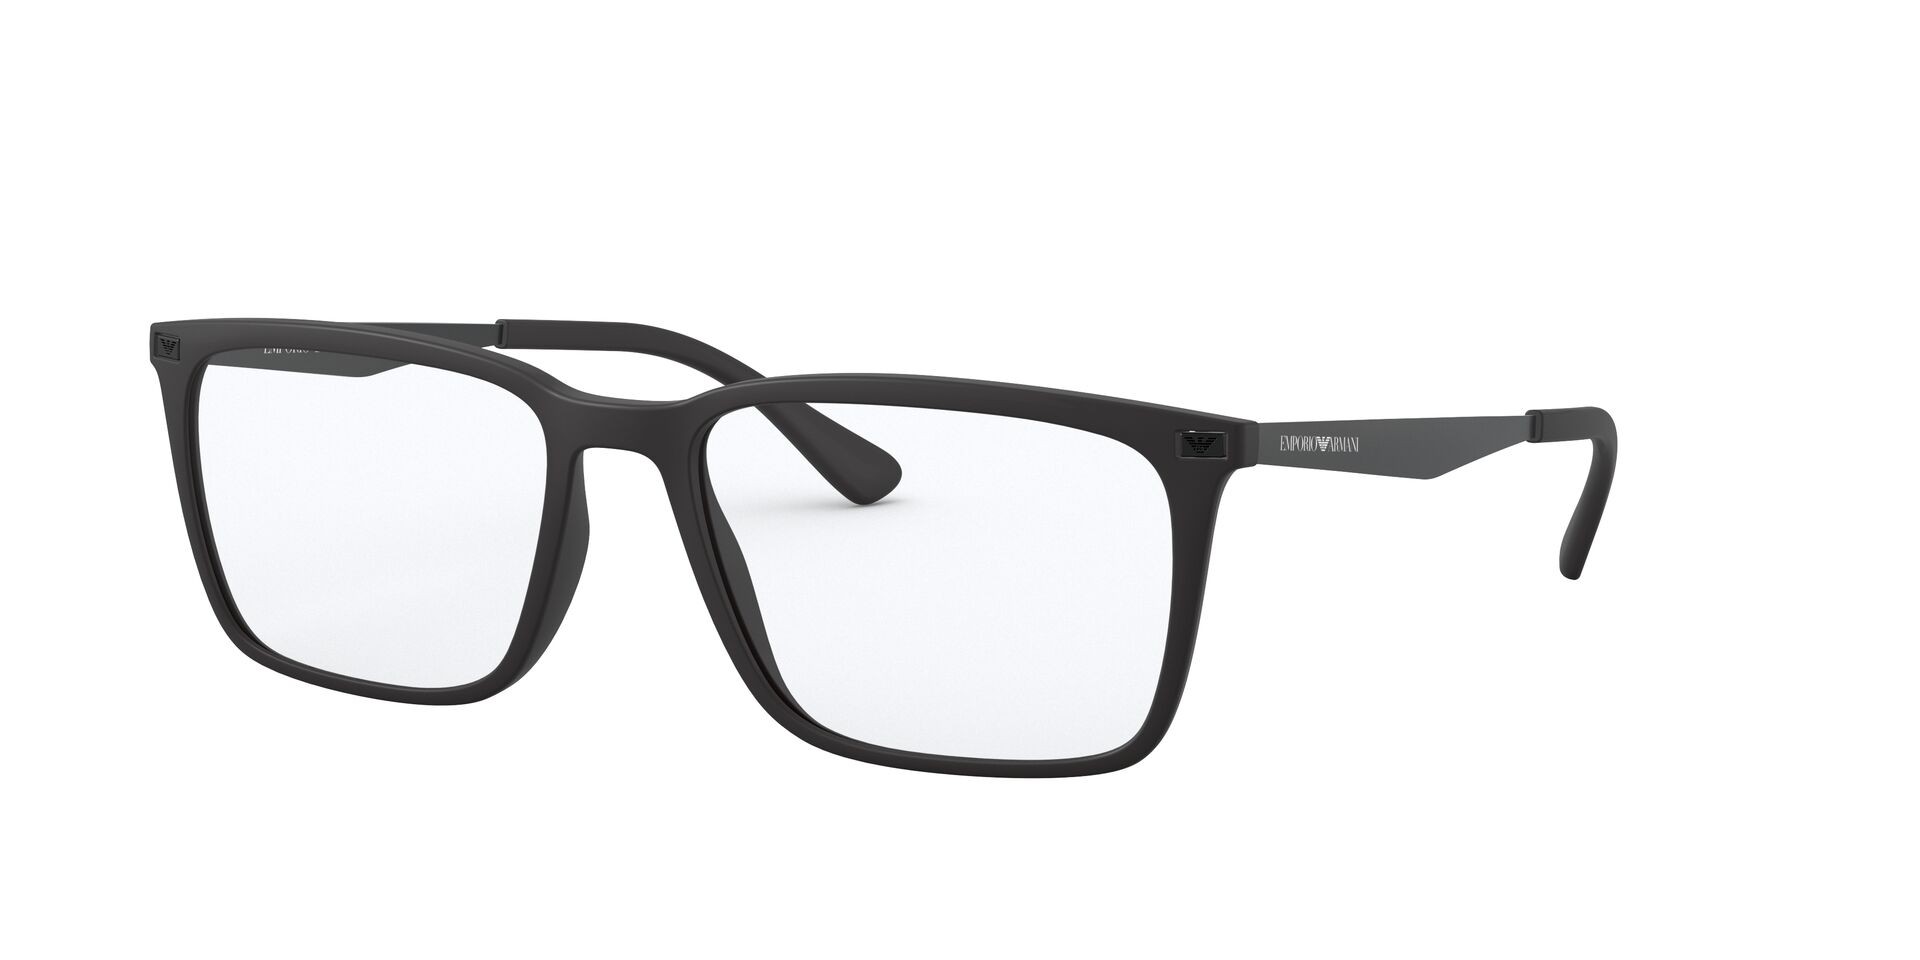 Emporio Armani 3169 5042 - Oculos de Grau